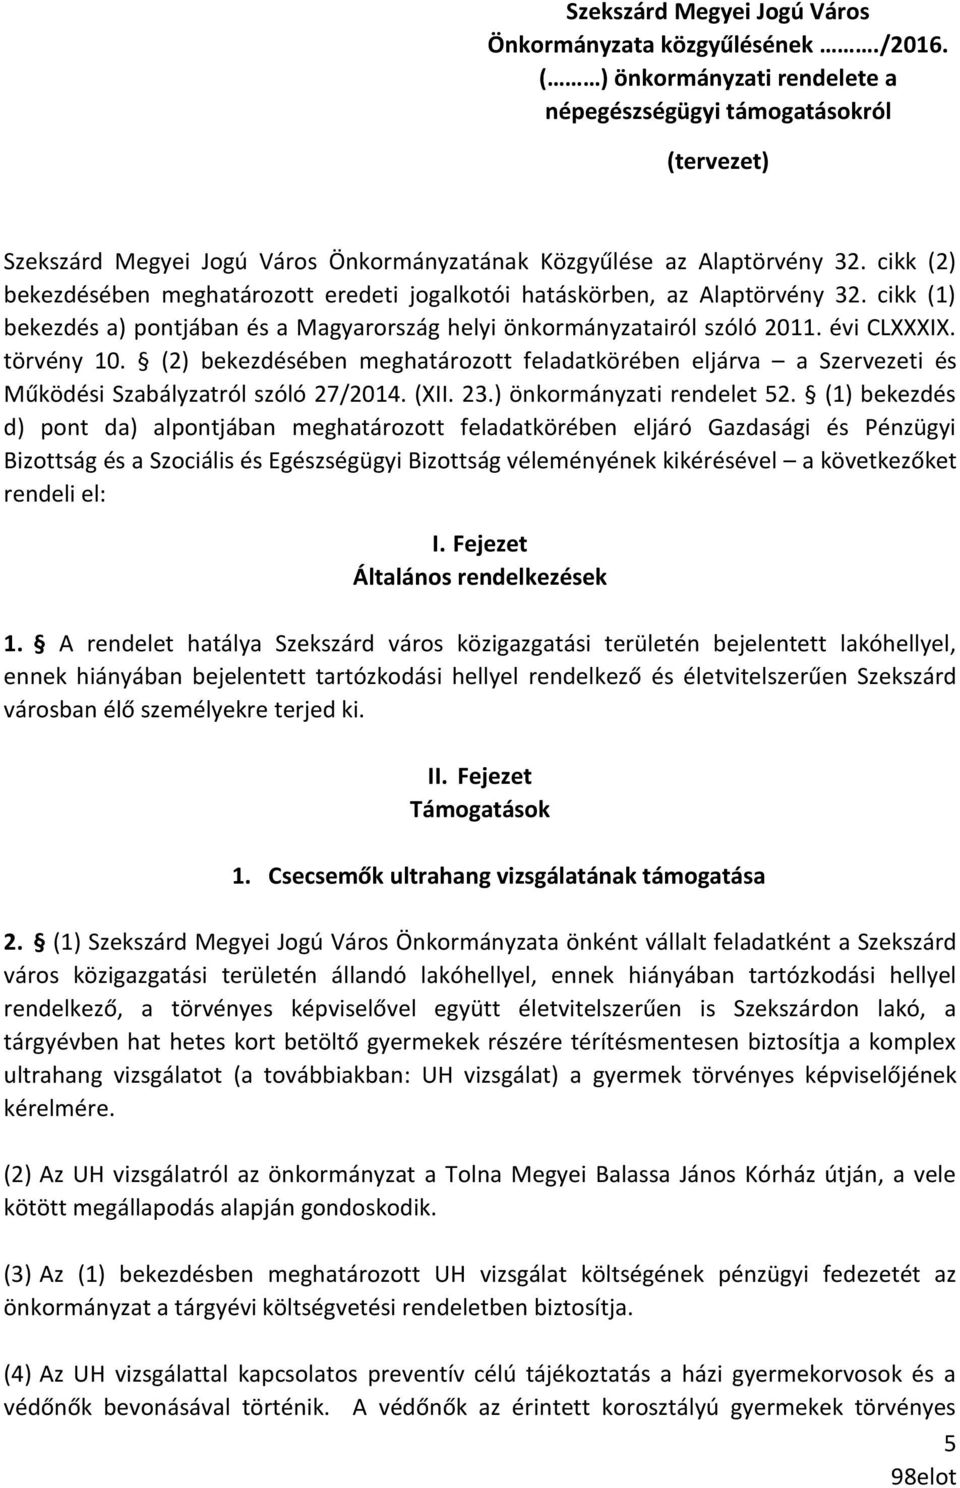 cikk (2) bekezdésében meghatározott eredeti jogalkotói hatáskörben, az Alaptörvény 32. cikk (1) bekezdés a) pontjában és a Magyarország helyi önkormányzatairól szóló 2011. évi CLXXXIX. törvény 10.